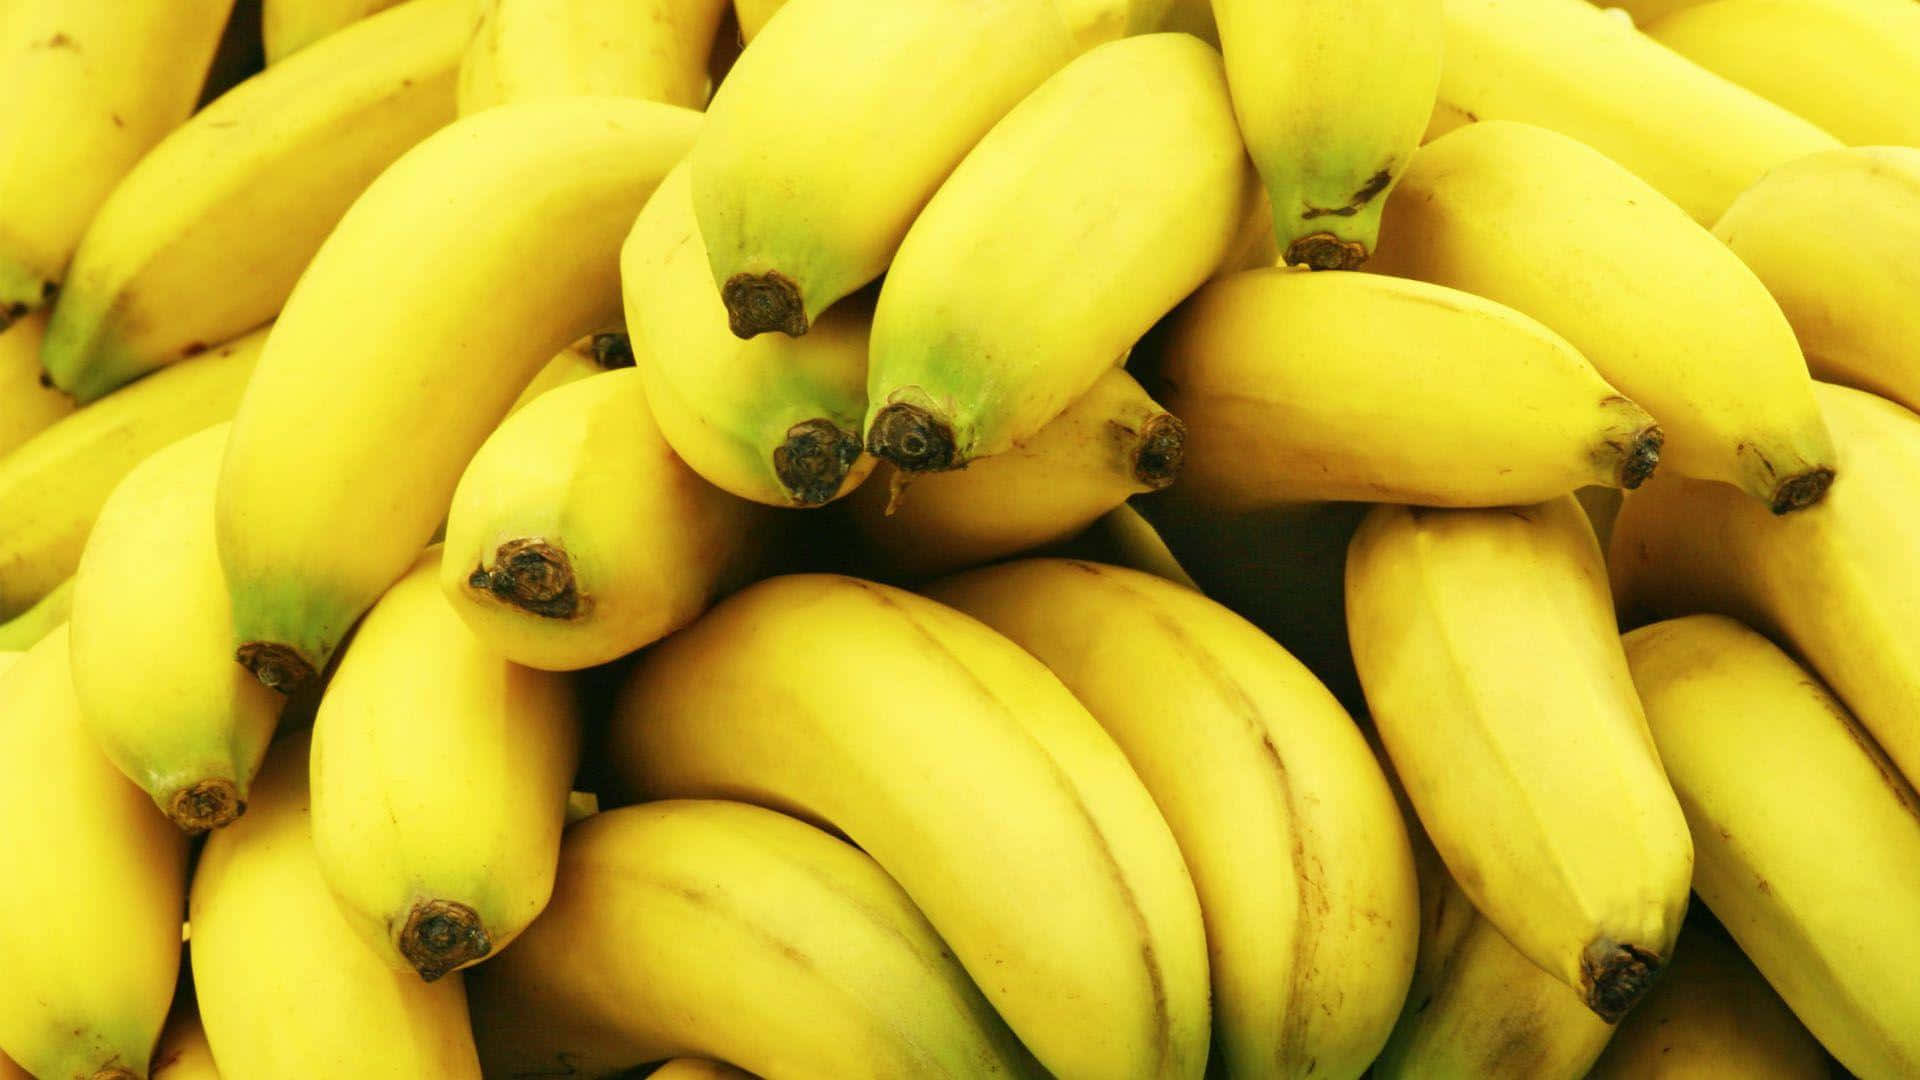 Goditiuna Banana Gialla, Ricca Di Nutrienti!